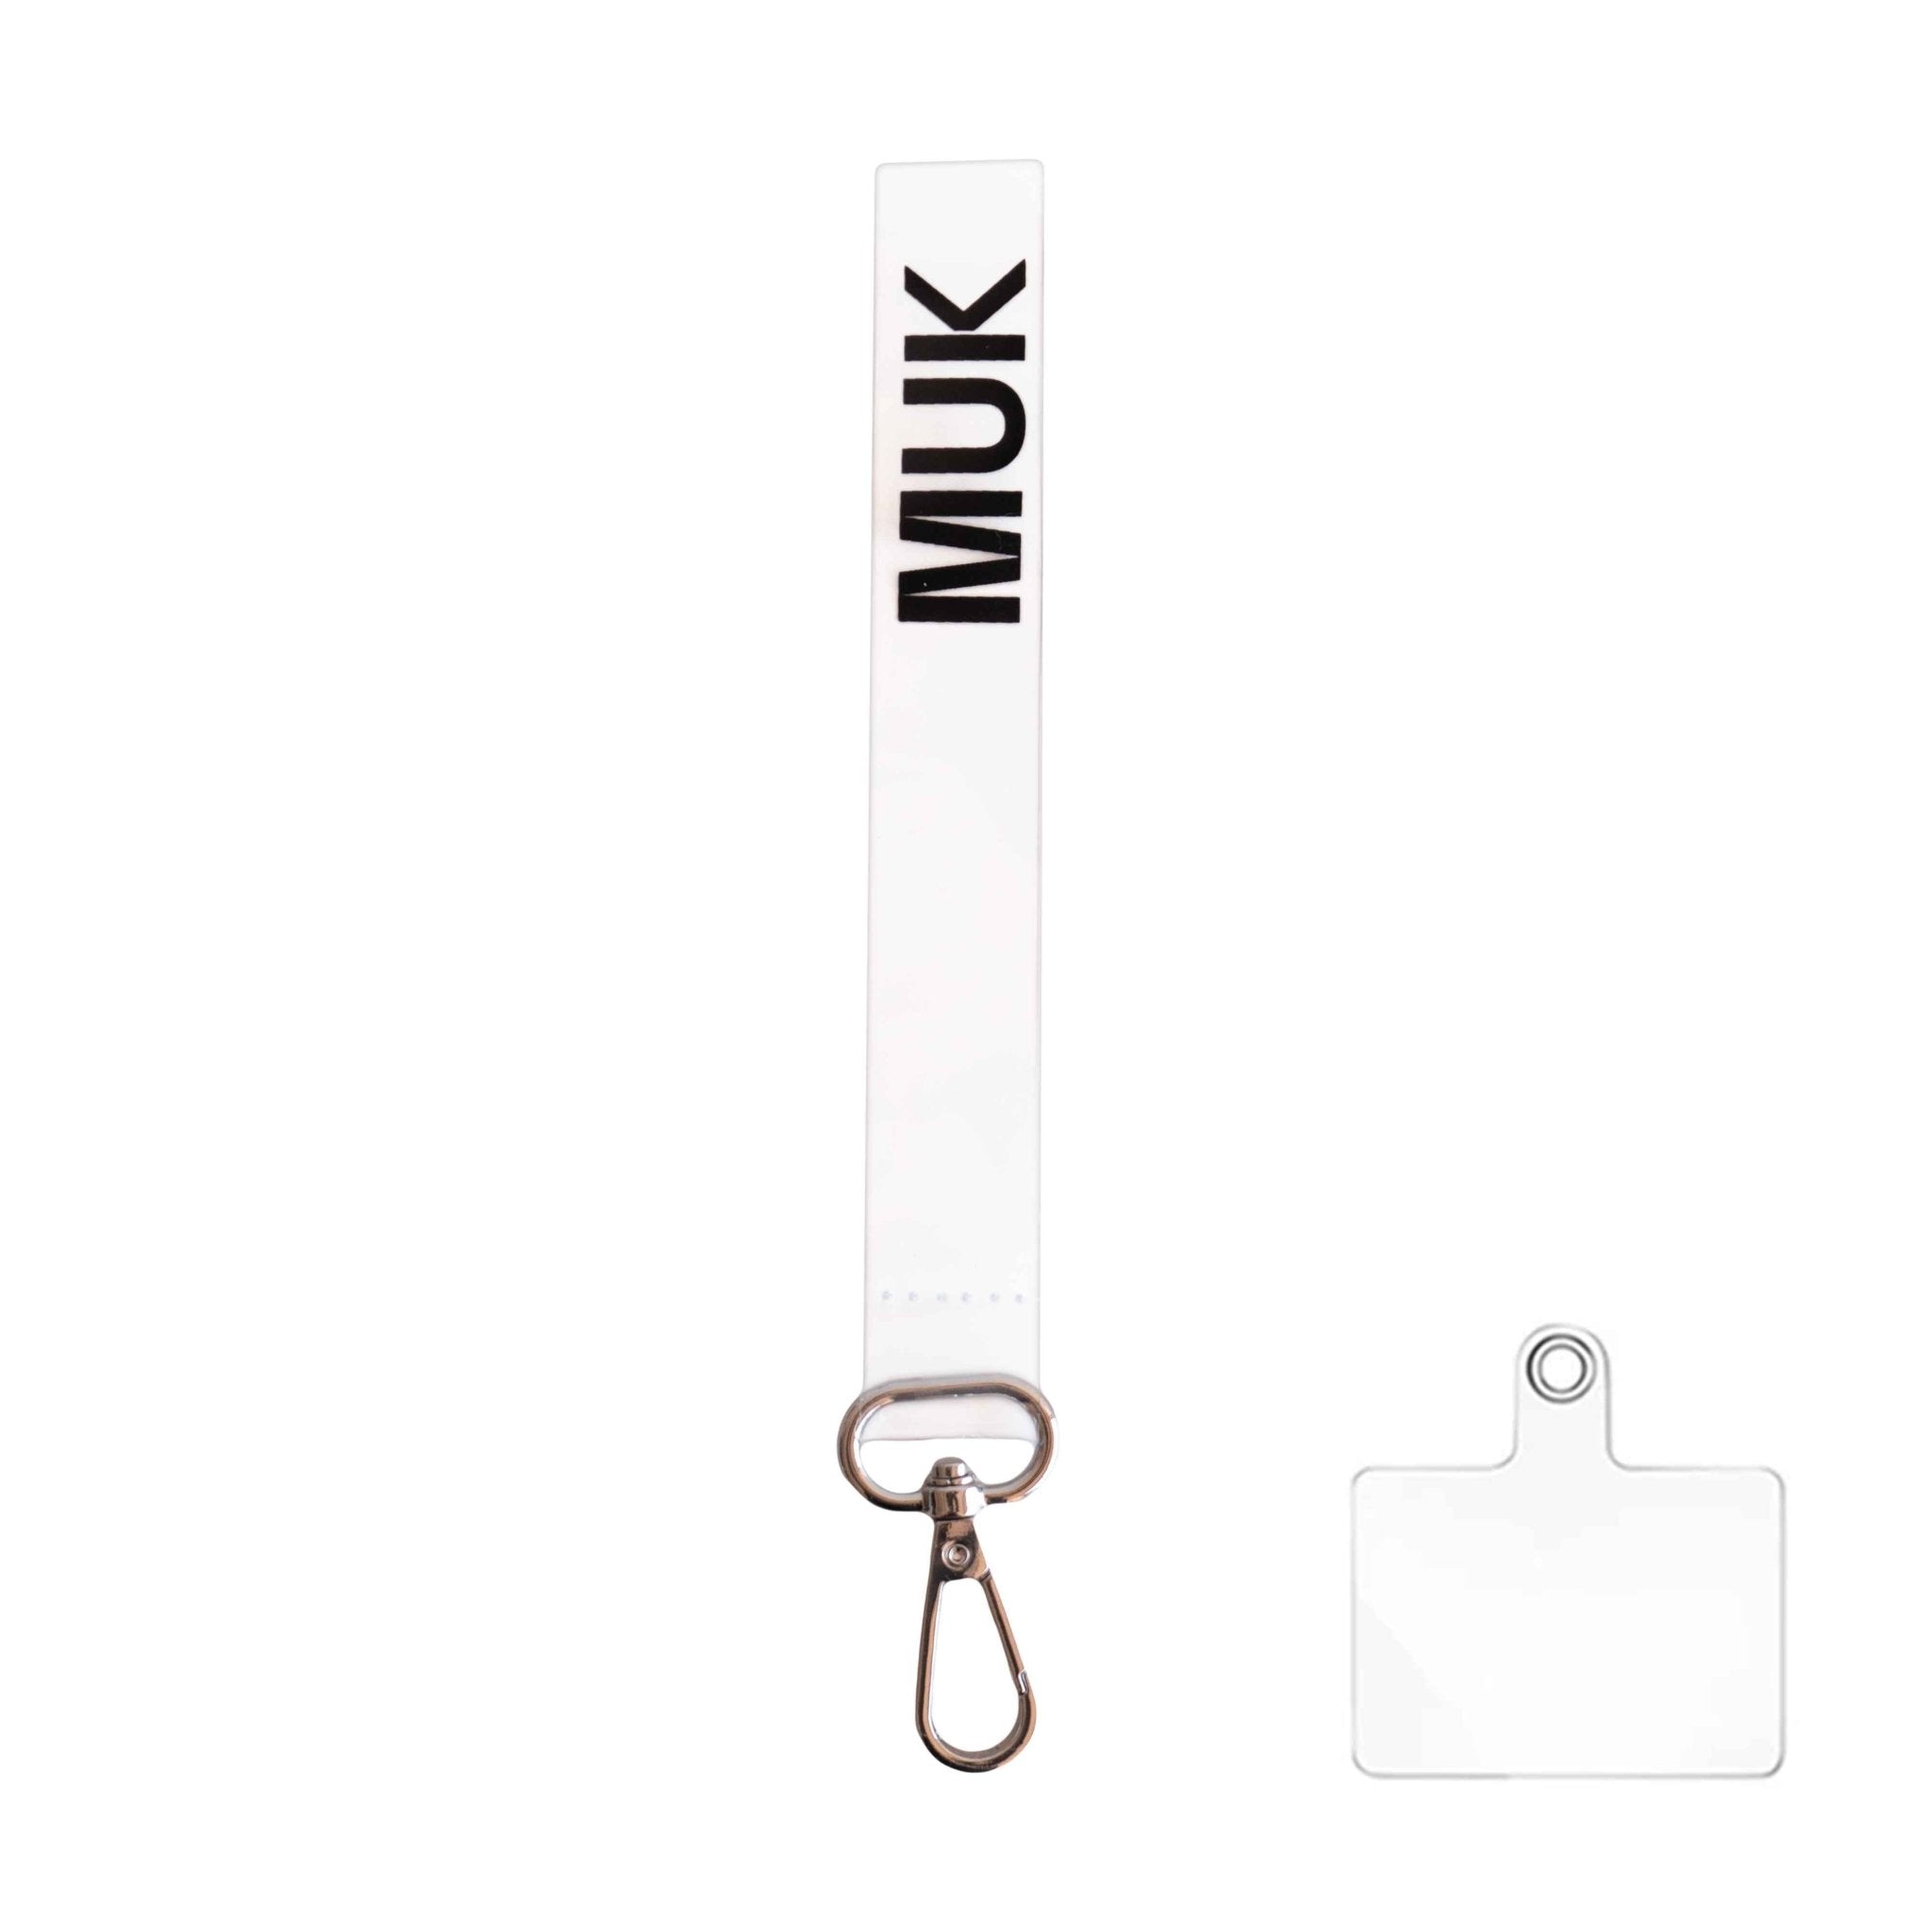 Cuerda transparente con la opción de personalización y el logo de Muk. Dispone de un mosquetón para poder usar como phonestrap con el adaptador de cuerda universal (incluido), o bien, como llavero.
